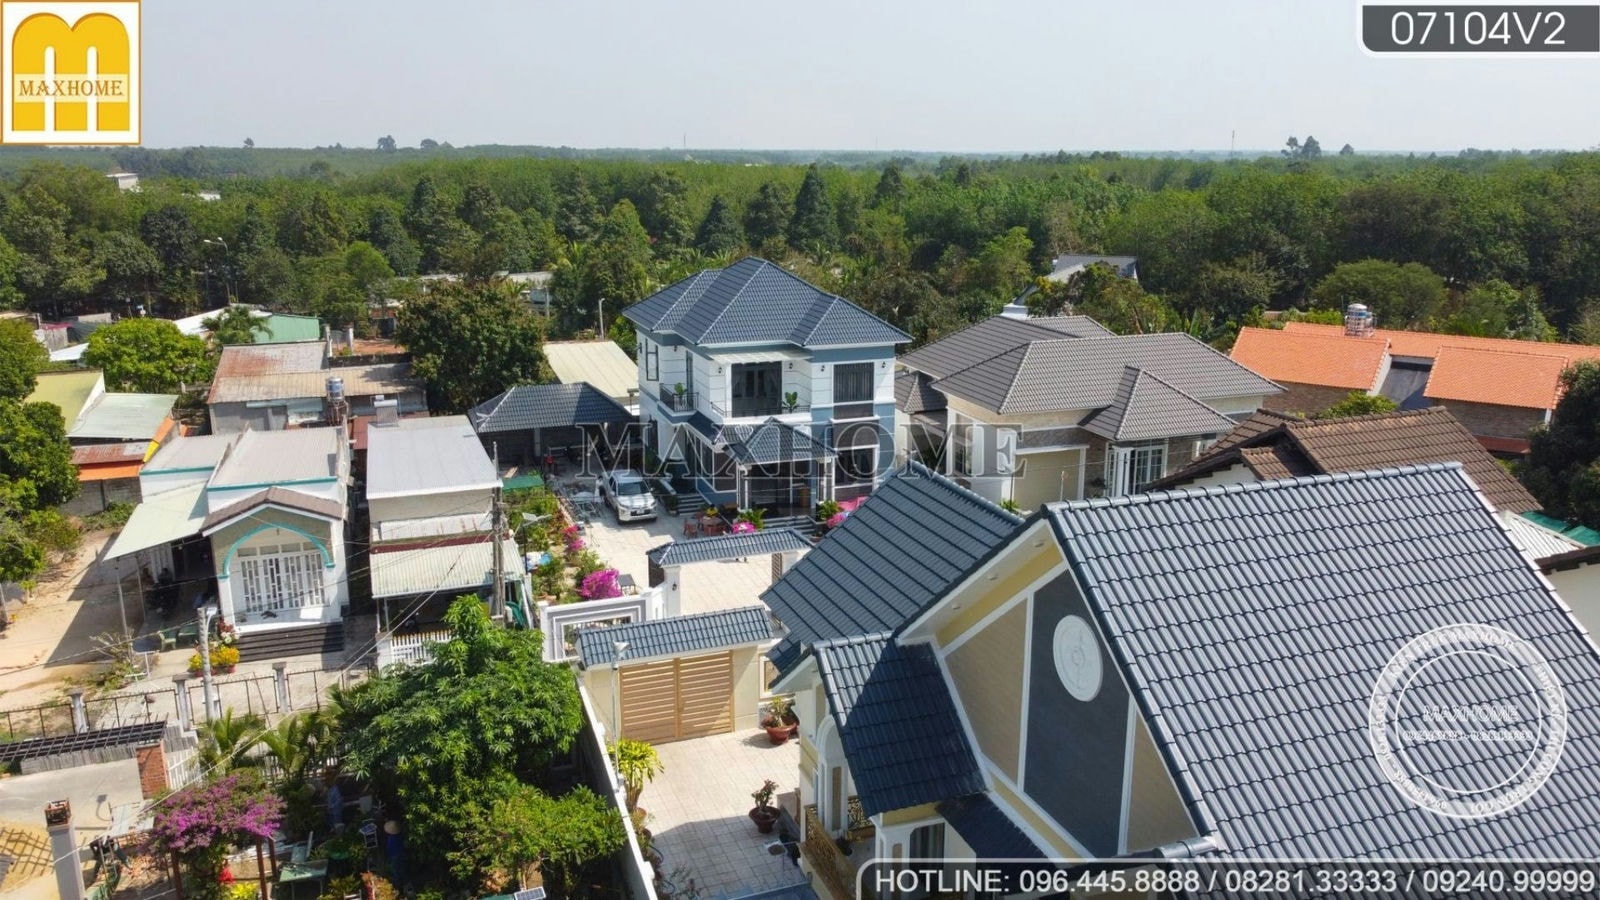 Hình ảnh thực tế hoàn thiện mẫu nhà mái Nhật đẹp nhất khu phố